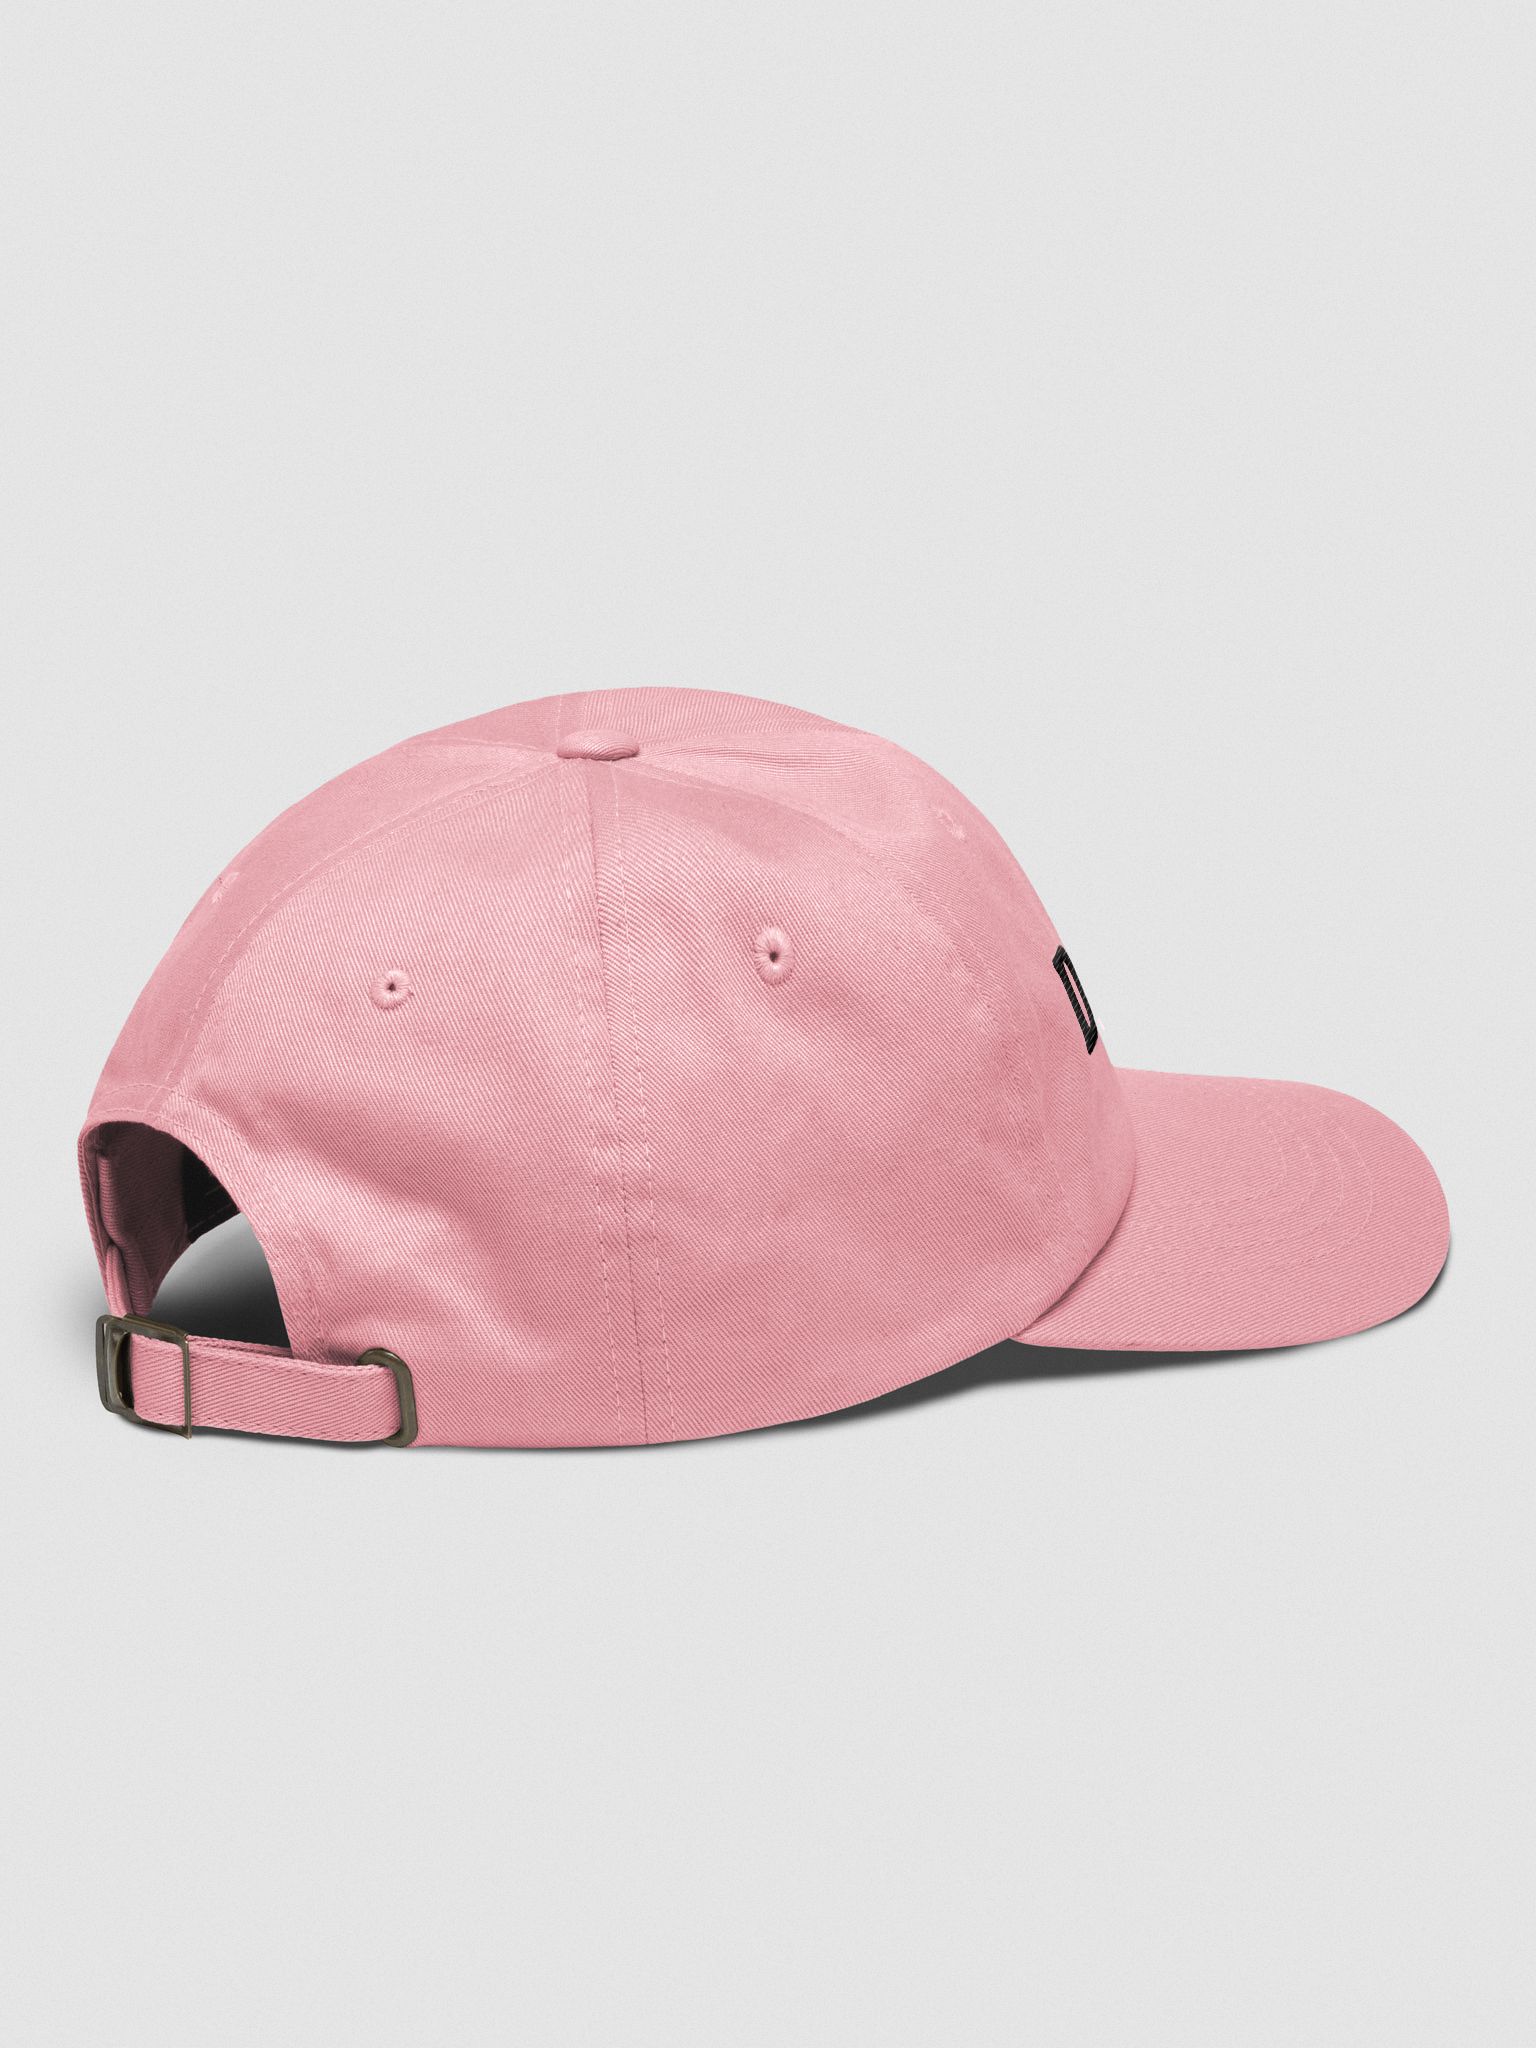 Don't Hat - Pink | Joce Bedard Official Merch